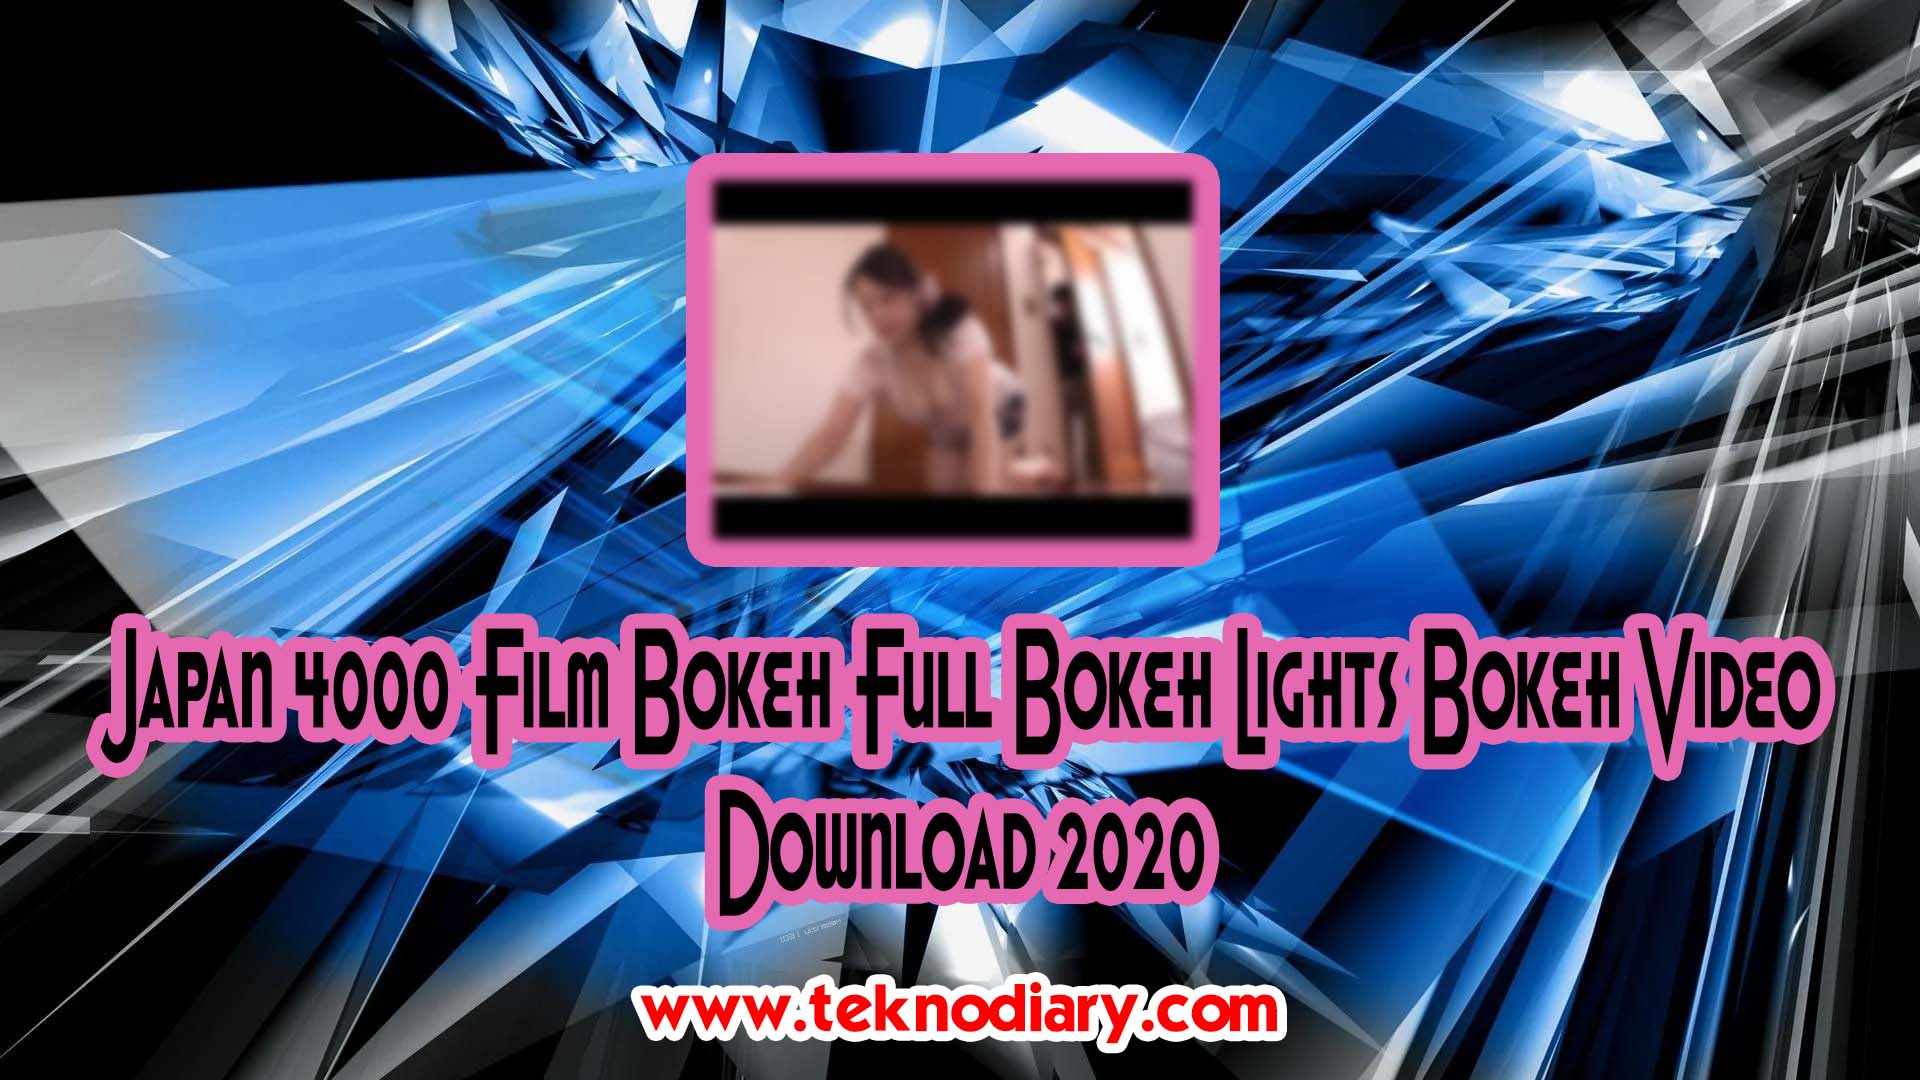 Japan 4000 Film Bokeh Full Bokeh Lights Bokeh Video Download 2020